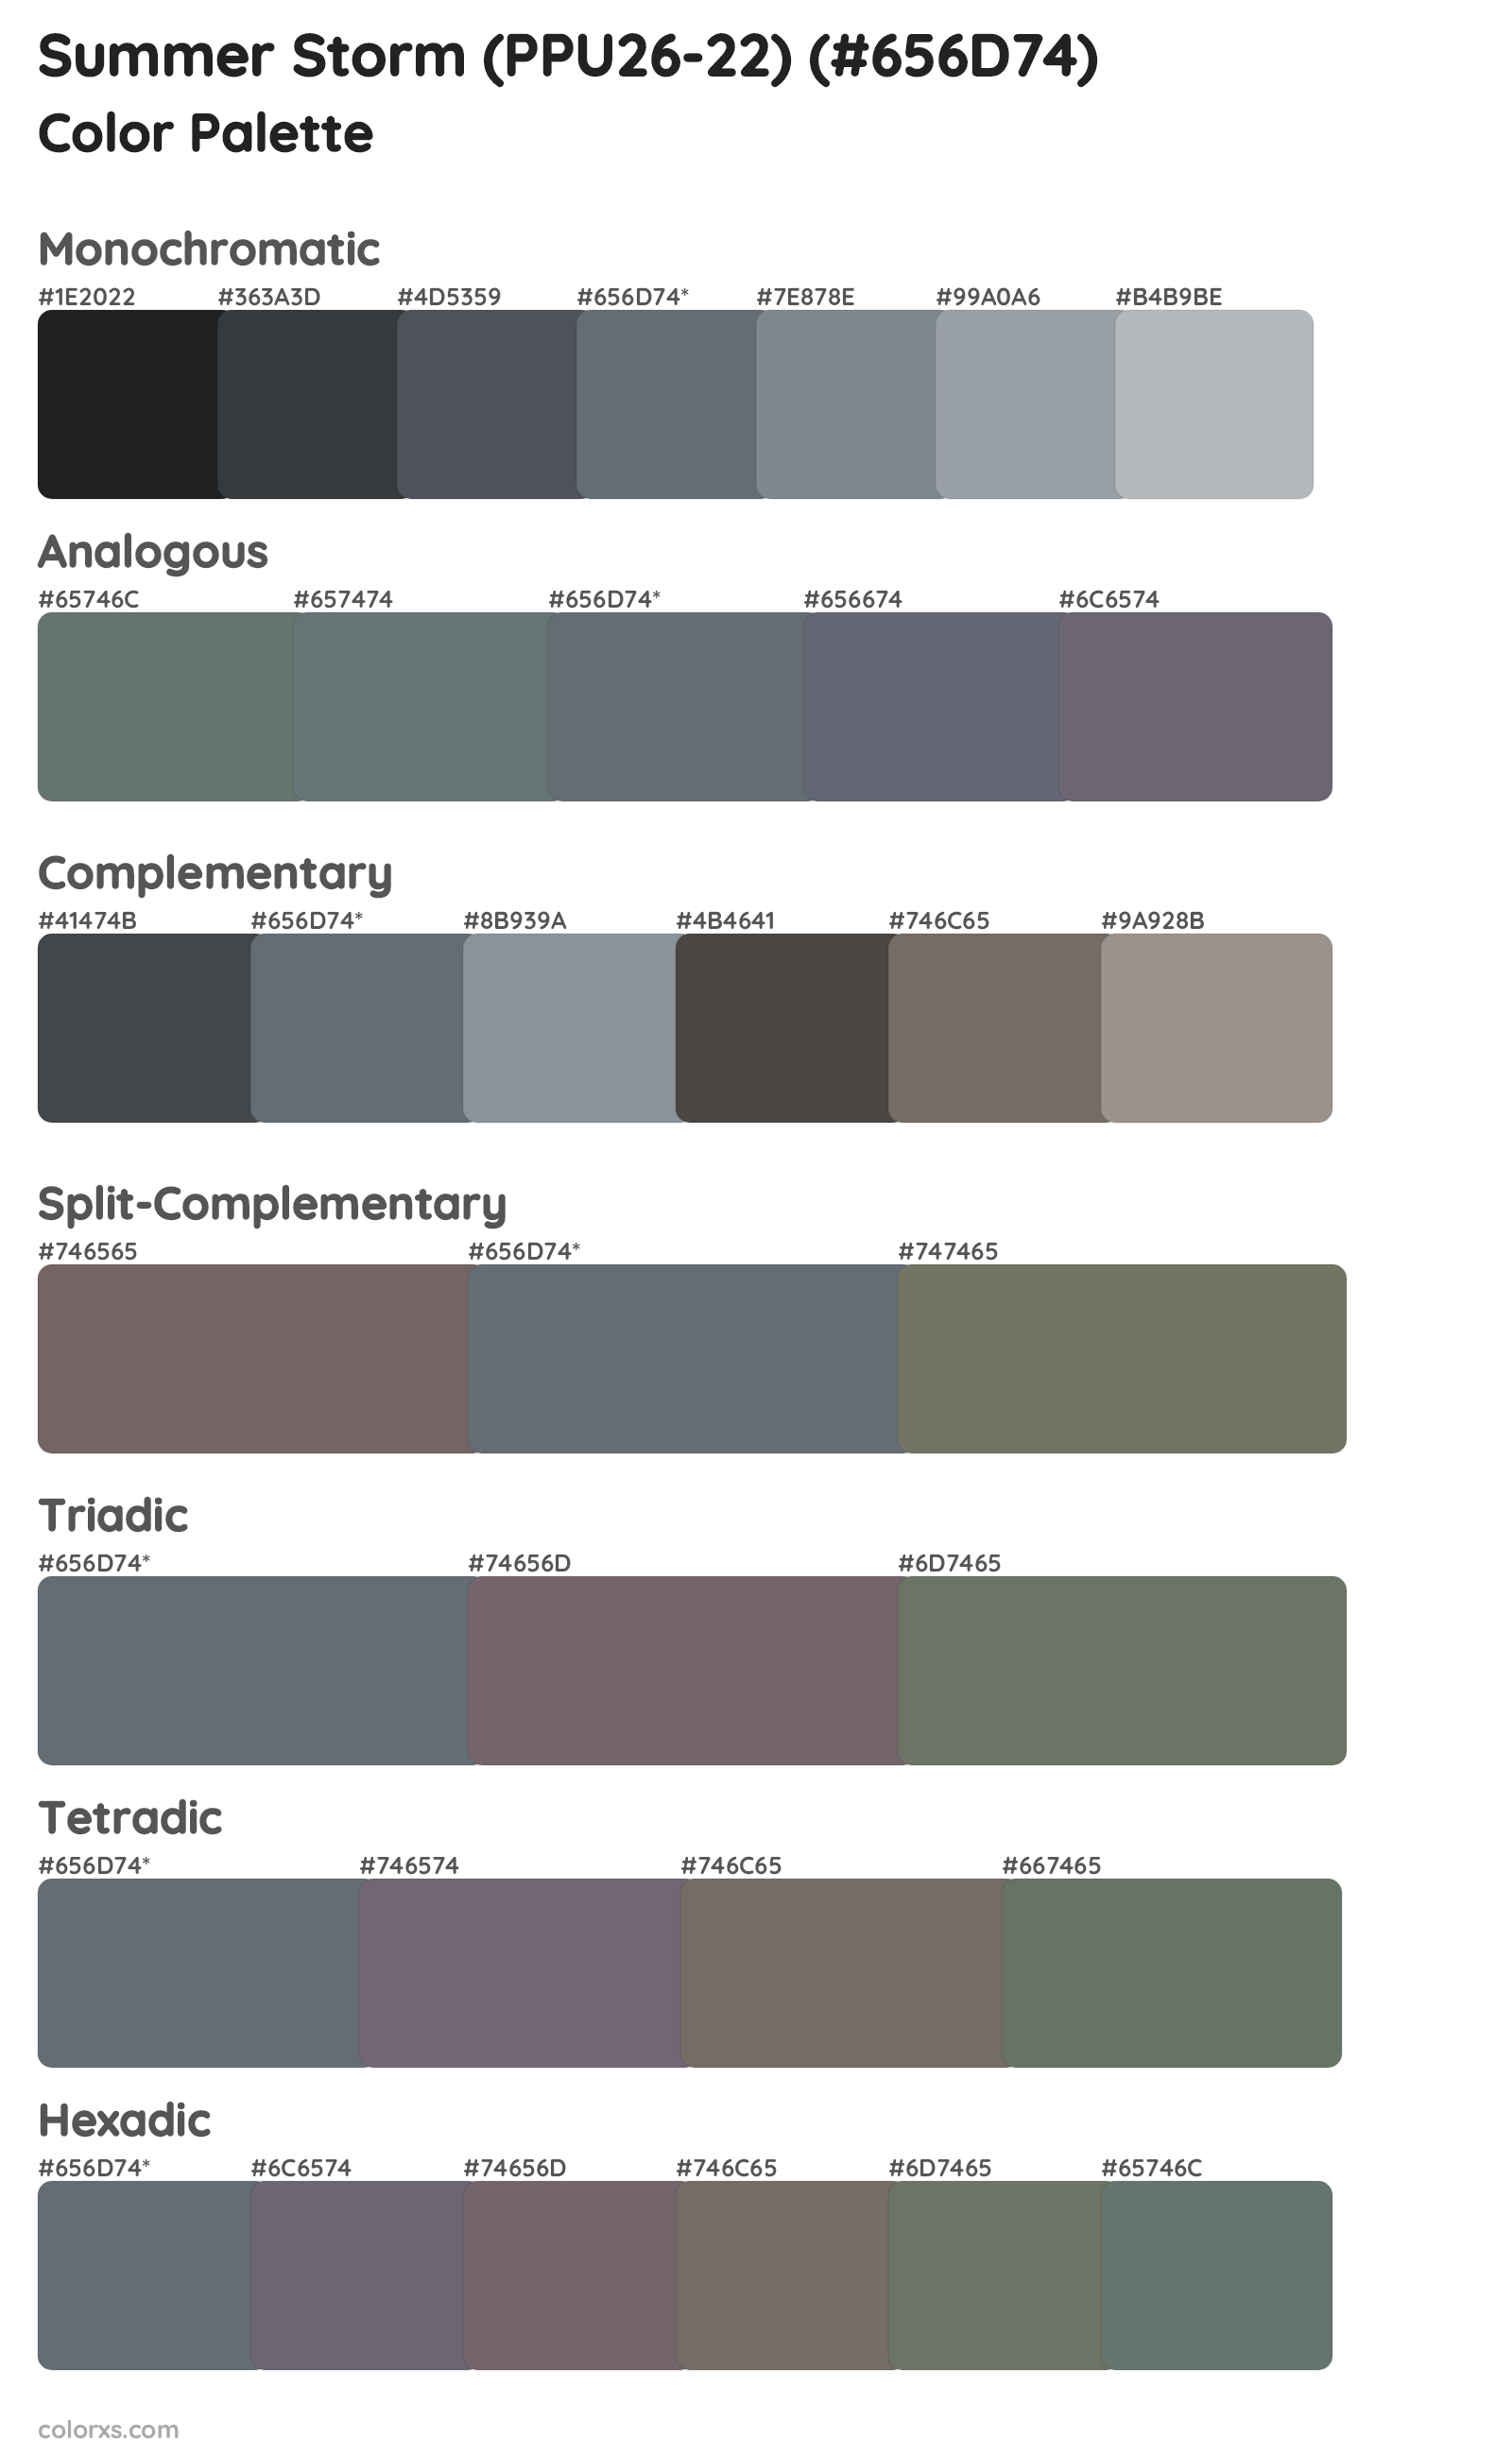 Summer Storm (PPU26-22) Color Scheme Palettes